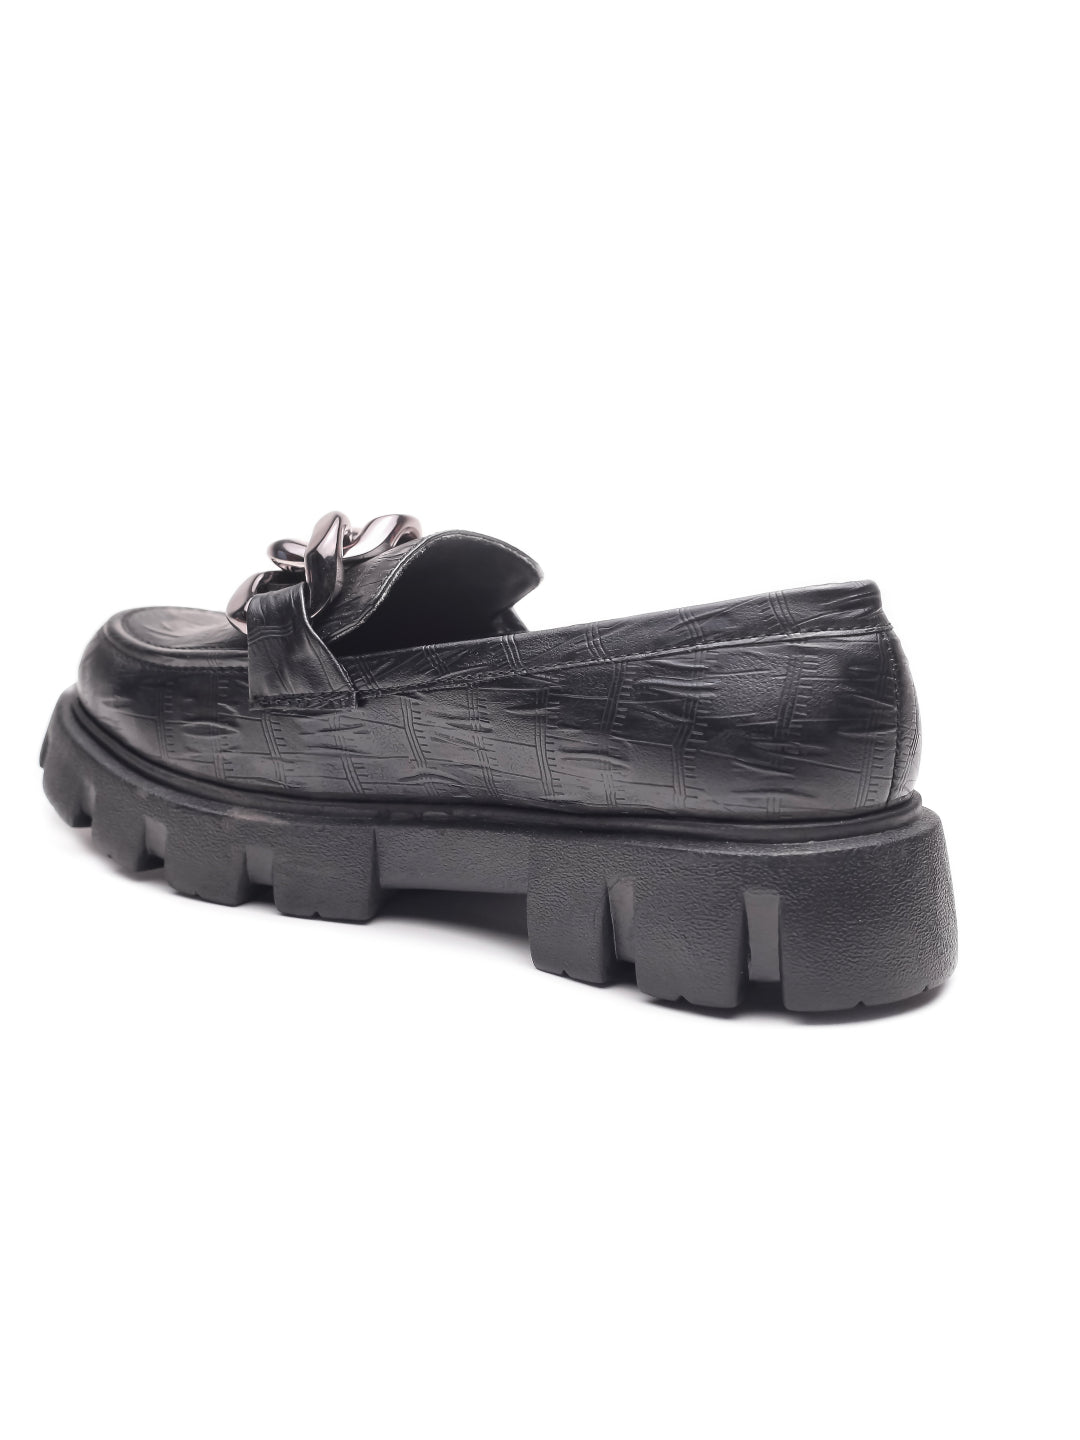 Brauch Black Patterned Embellished Loafer Shoe